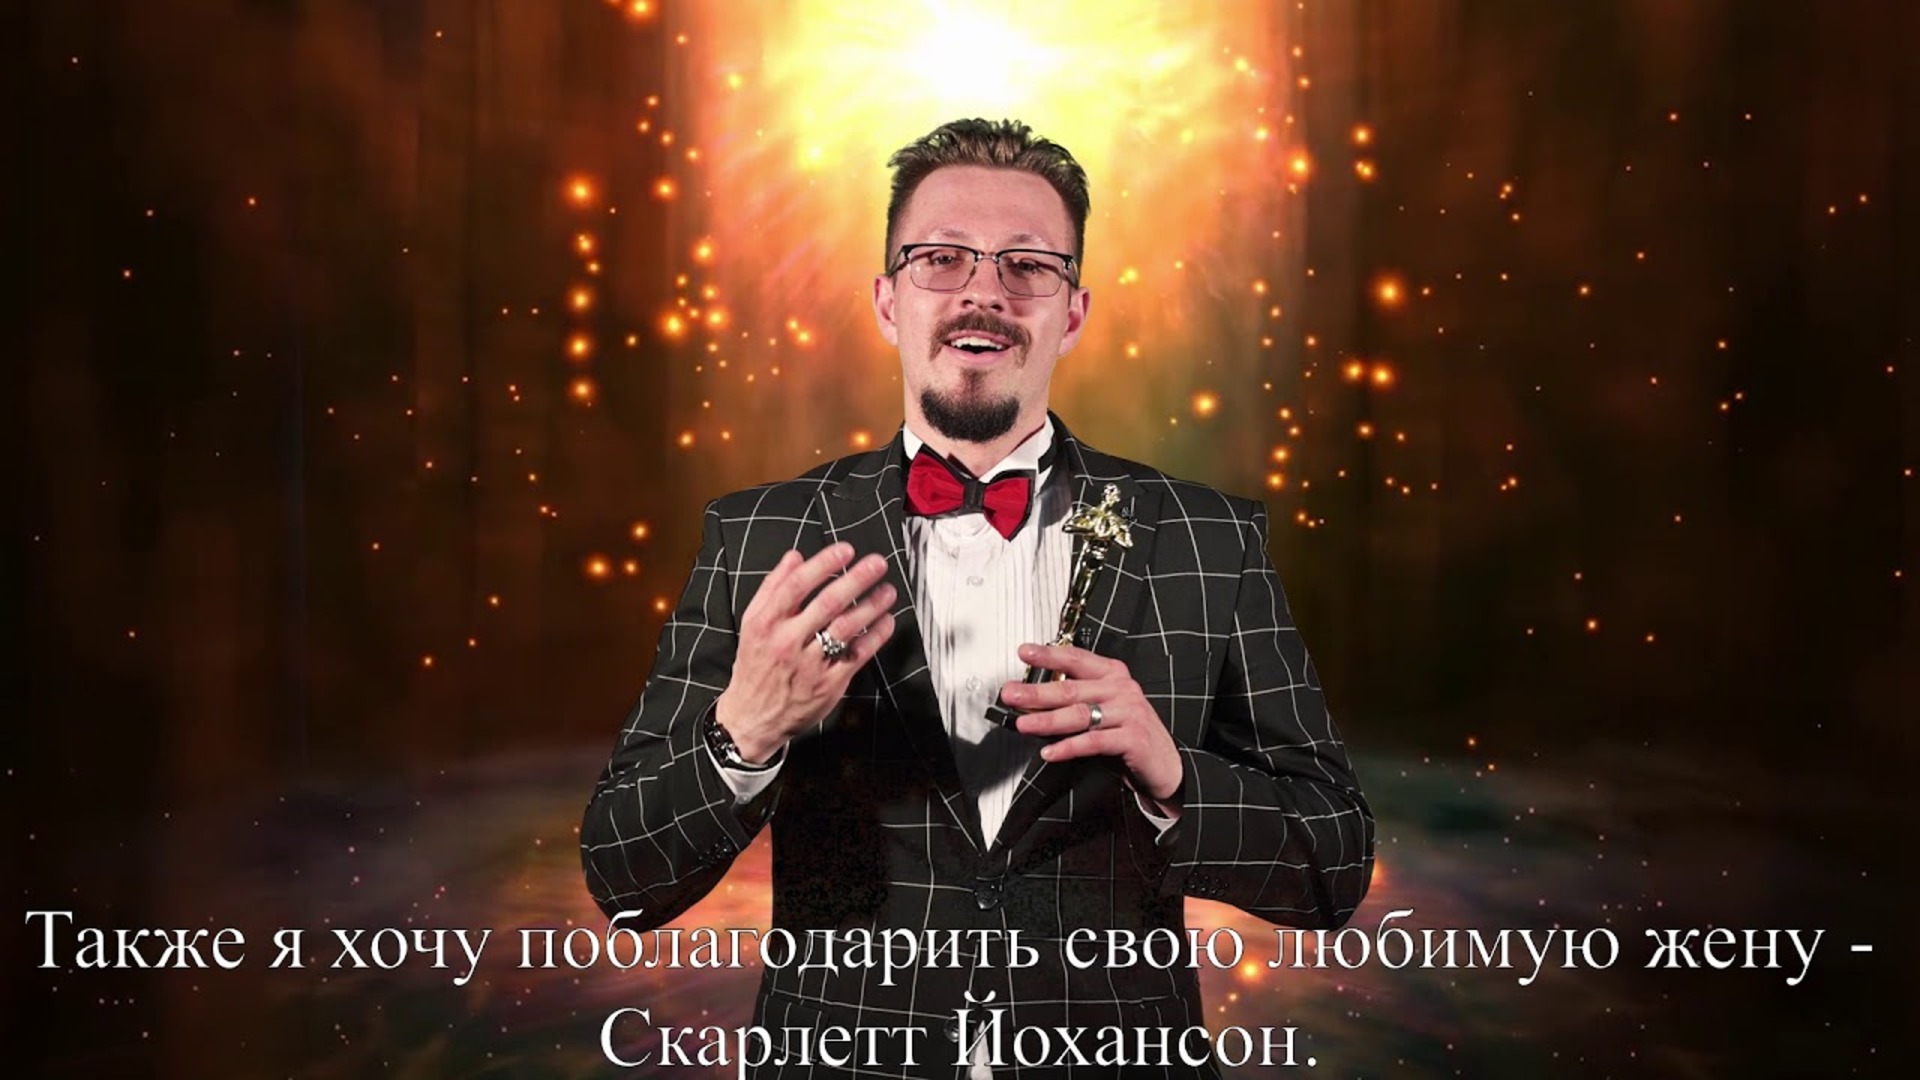 #TOPSHOWMEN Ведущий Валерий Иванов.